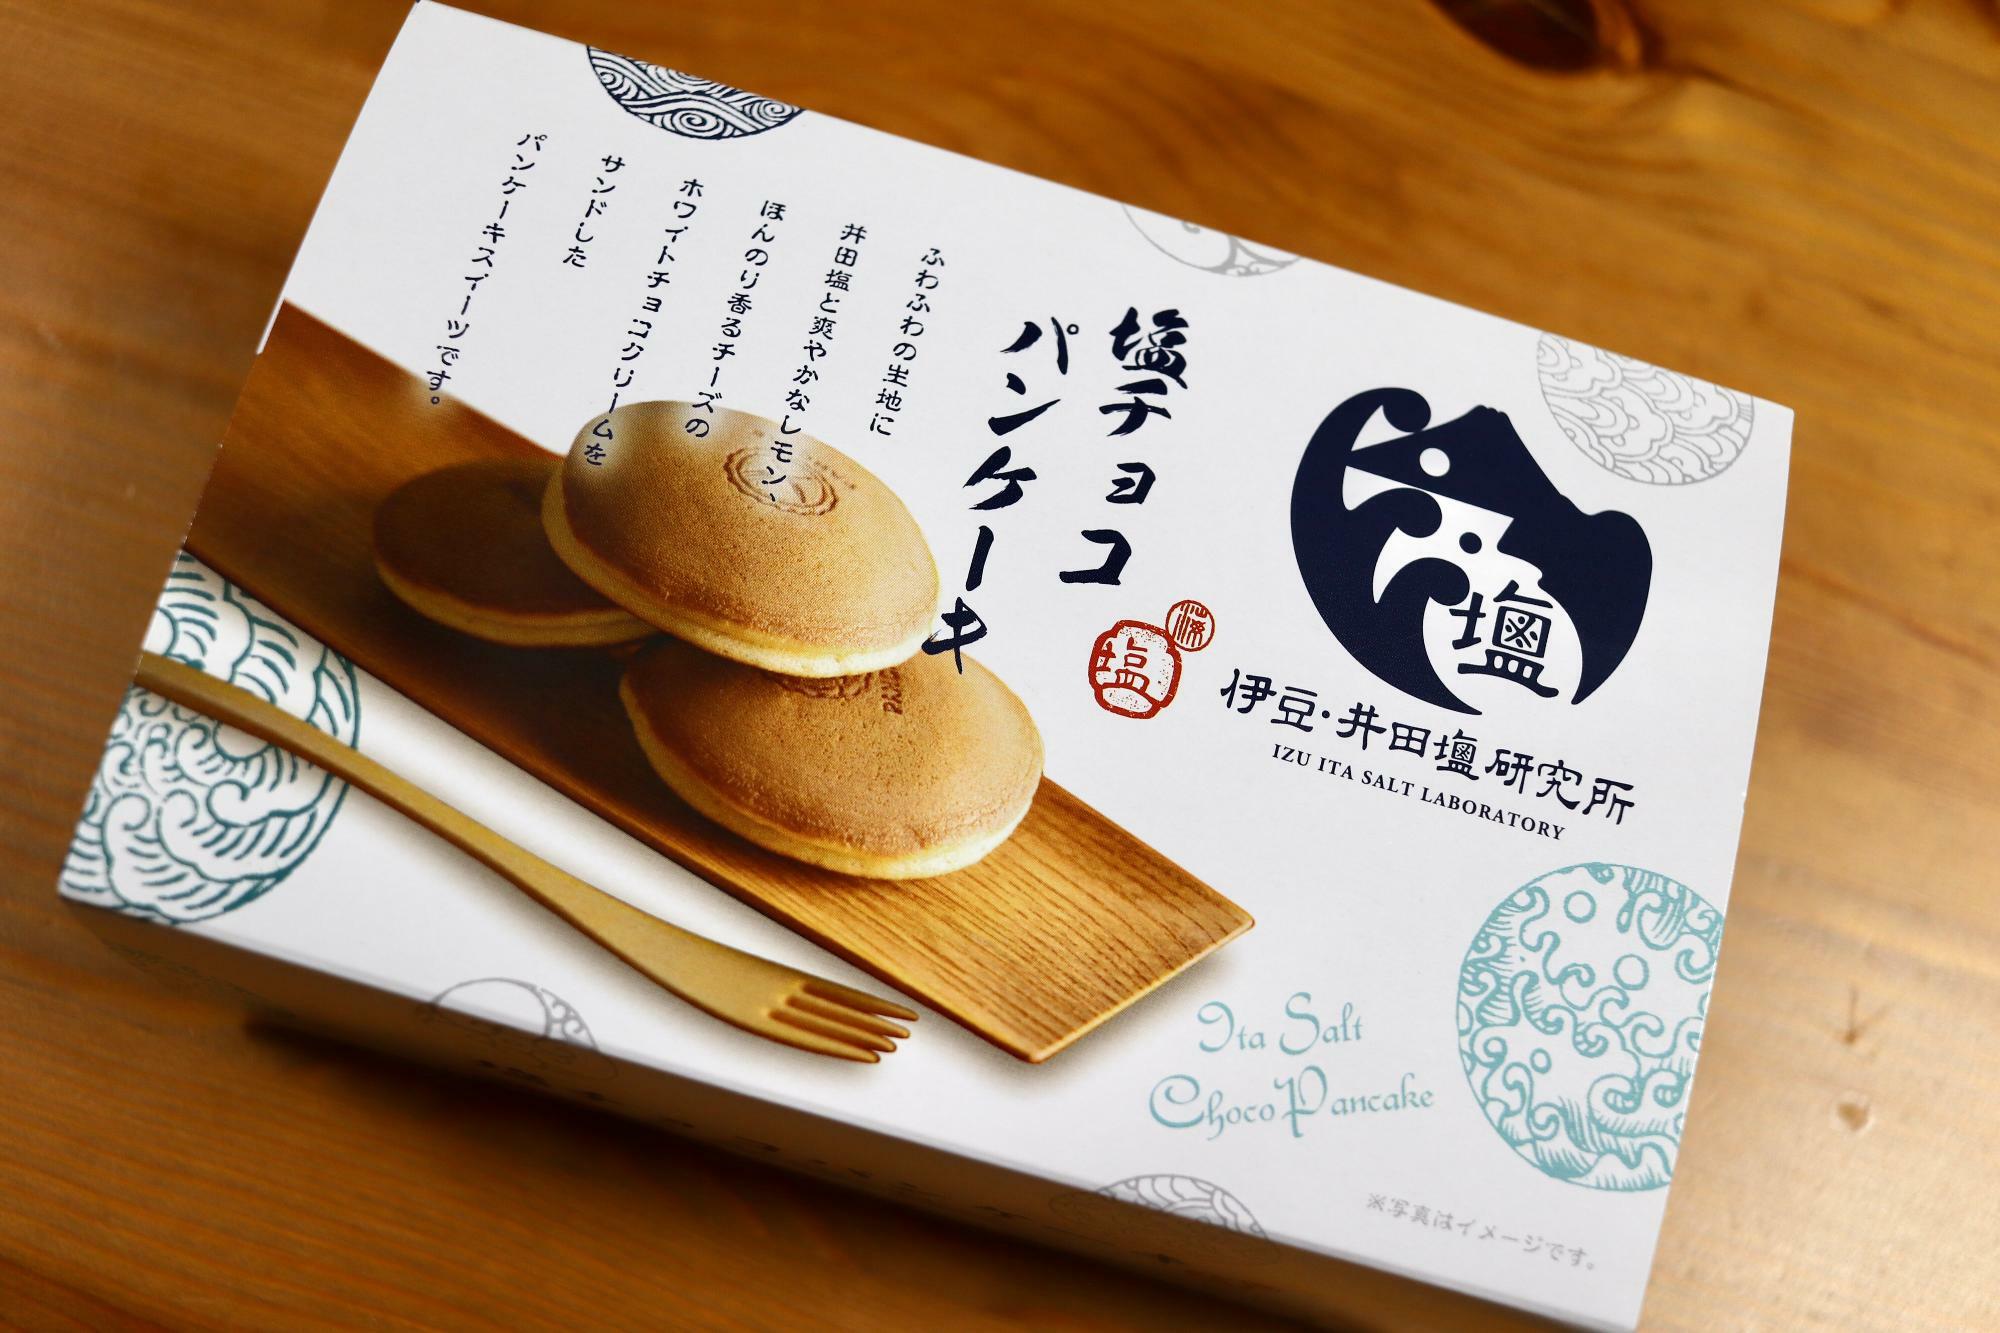 伊豆・井田塩研究所「塩チョコパンケーキ」4個入り800円税込